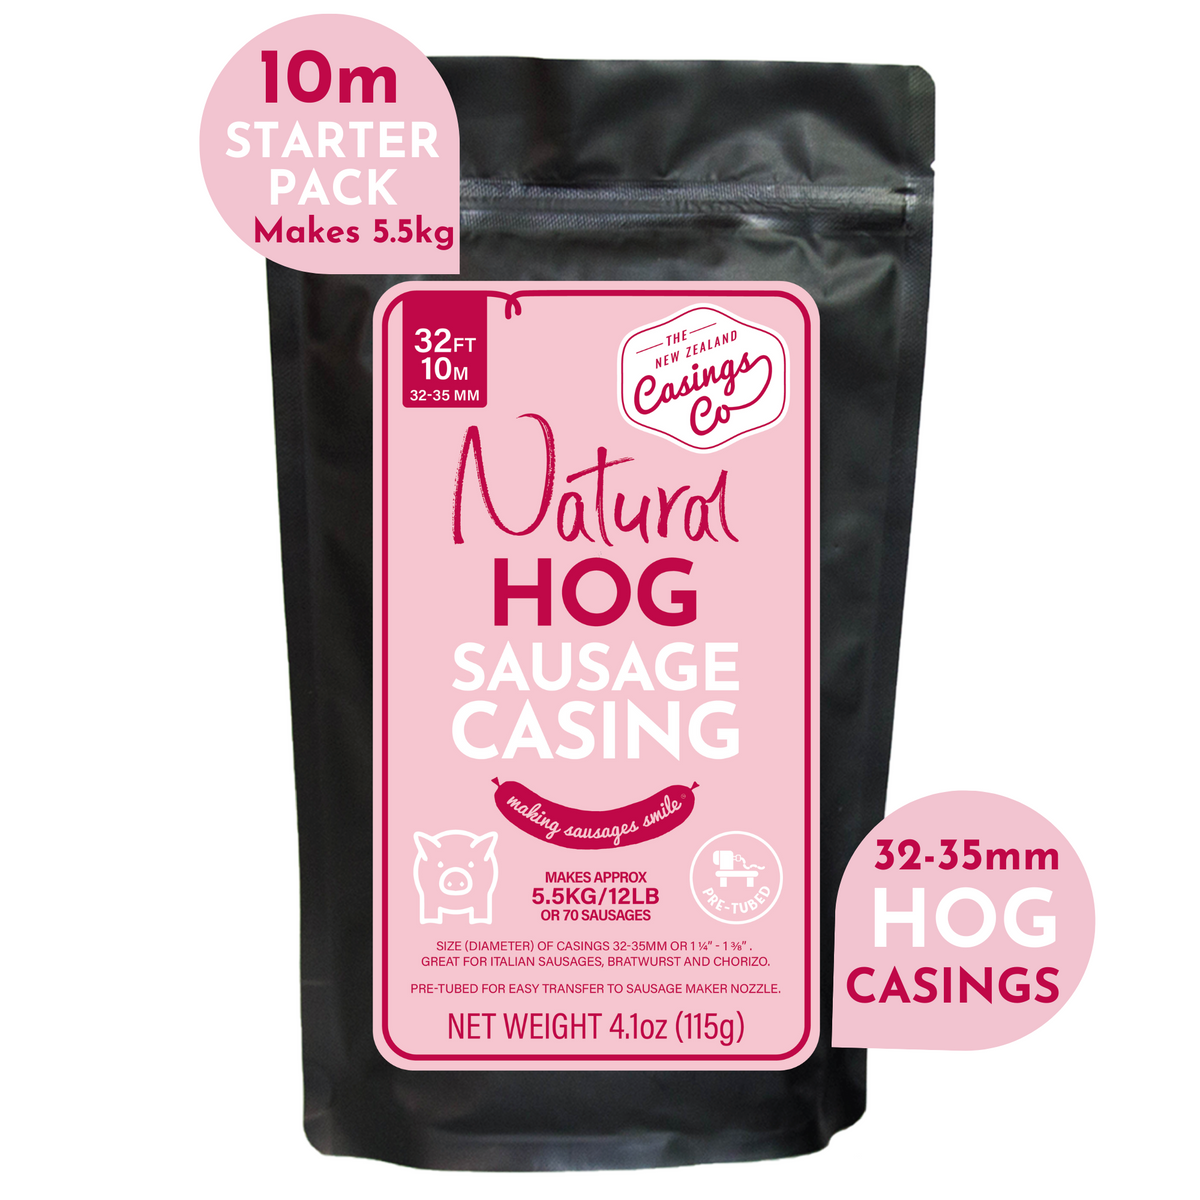 Natural Hog Casings 32-35mm 10m